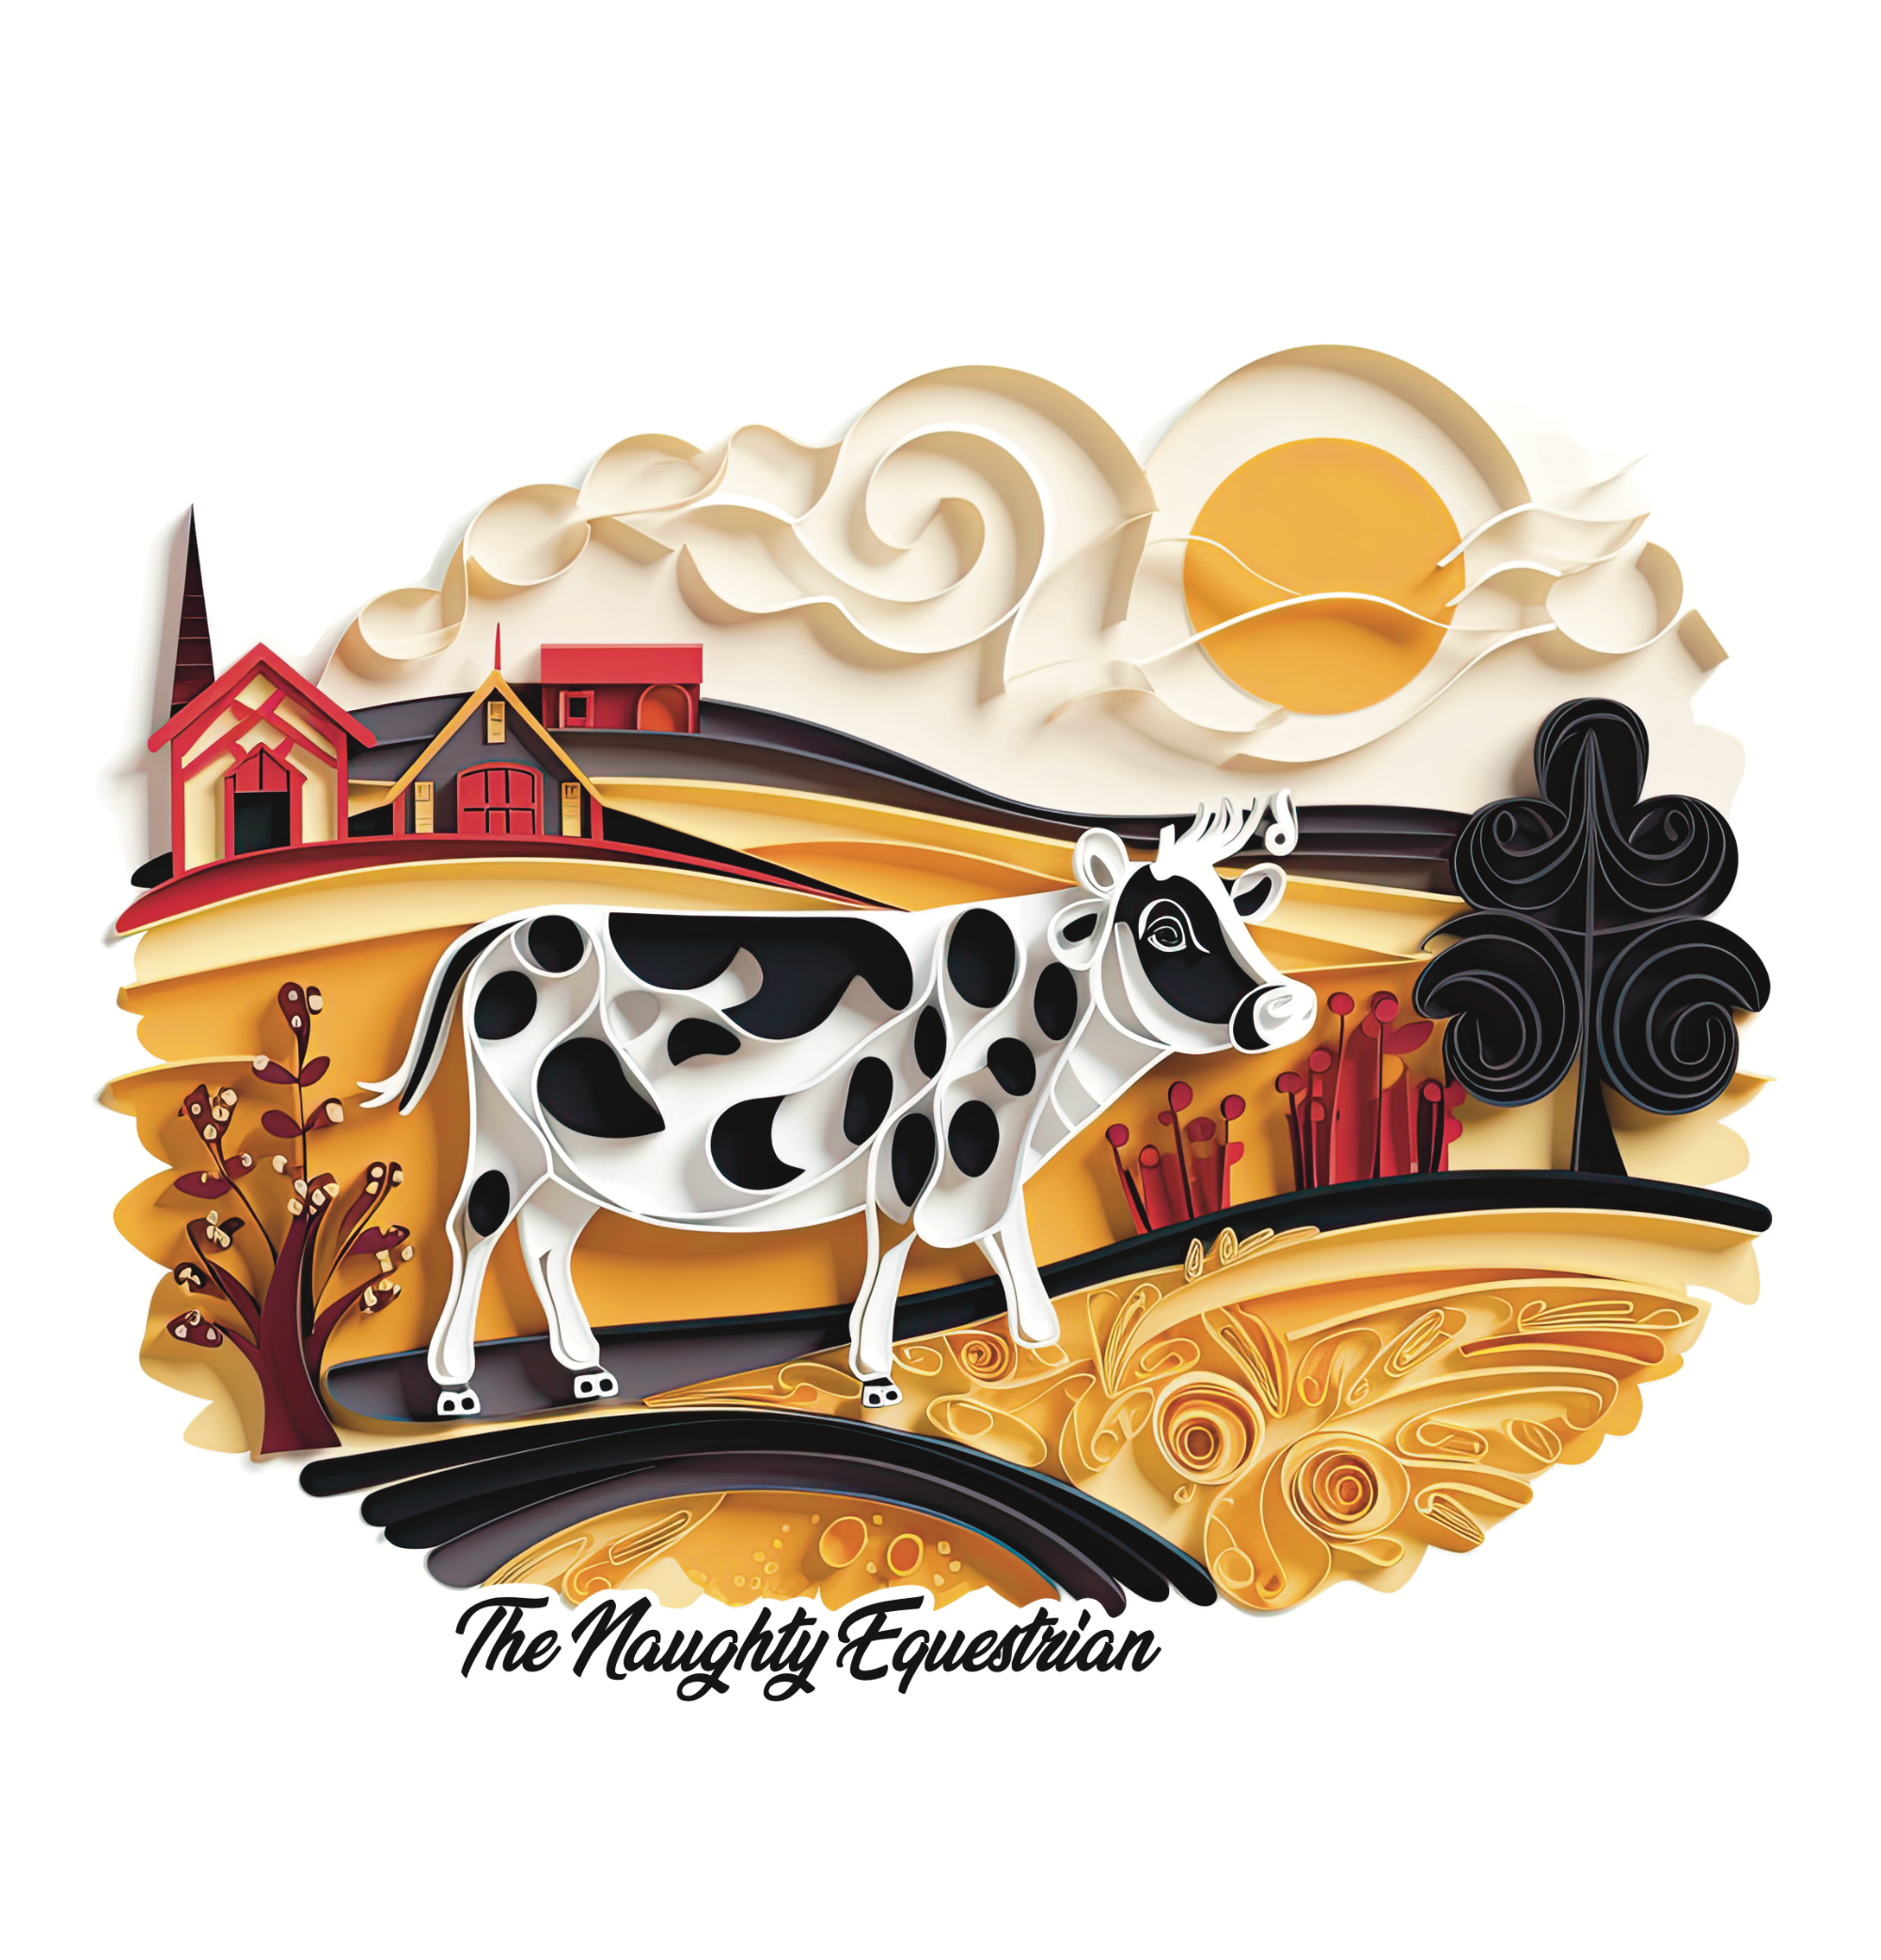 Farm Animals Cow Sticker, Western Decal